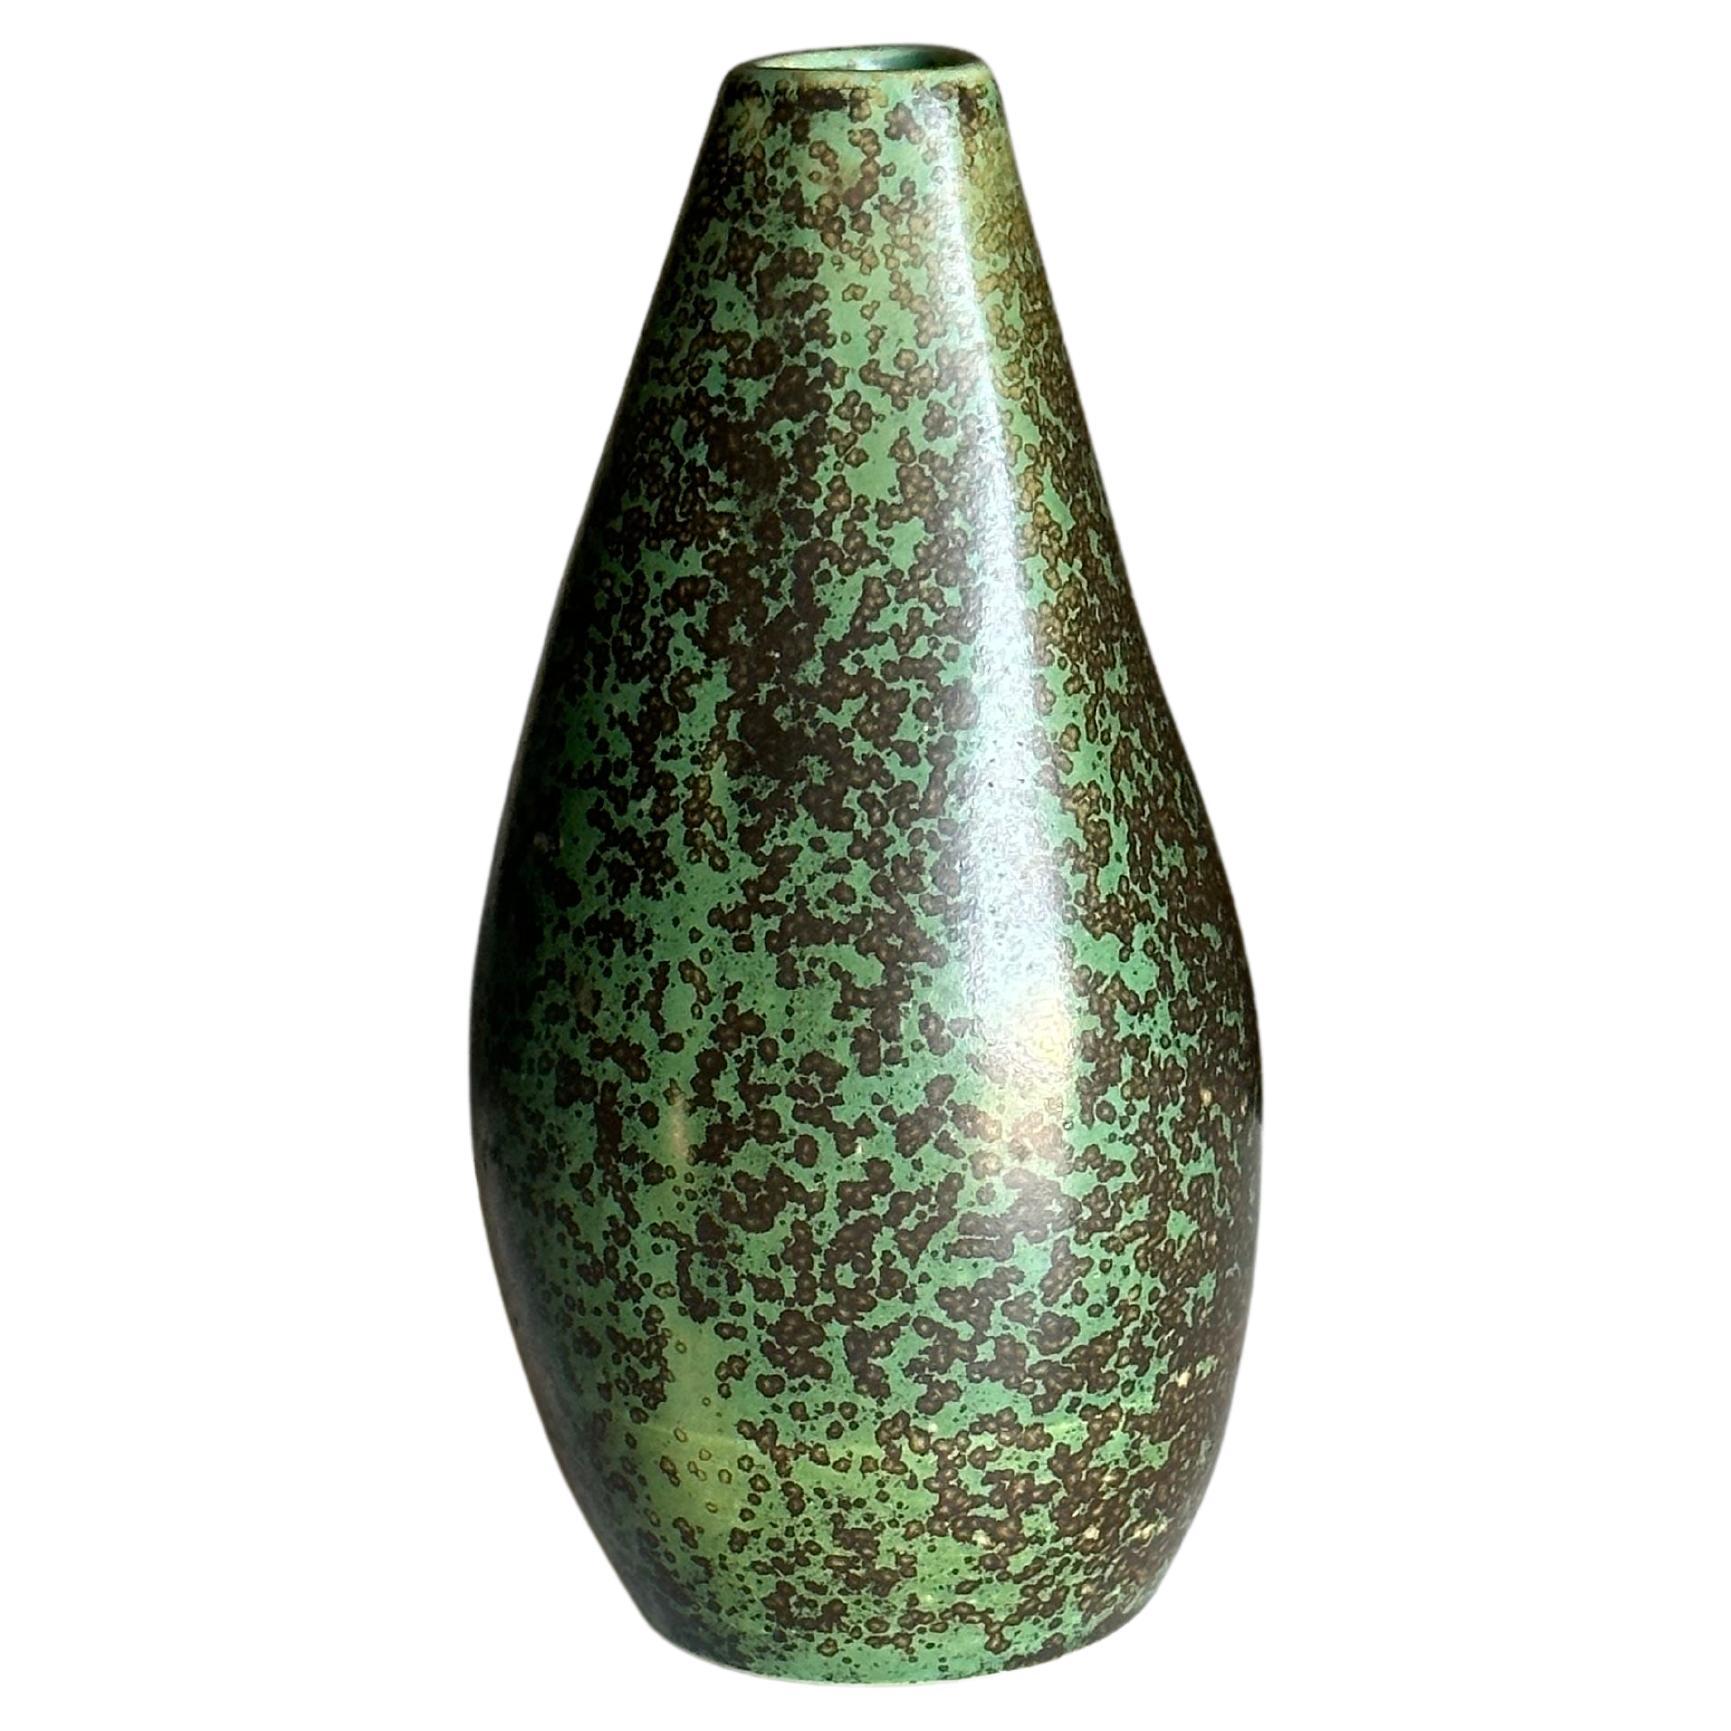 L. Hjorth Vase in Glazed Stoneware